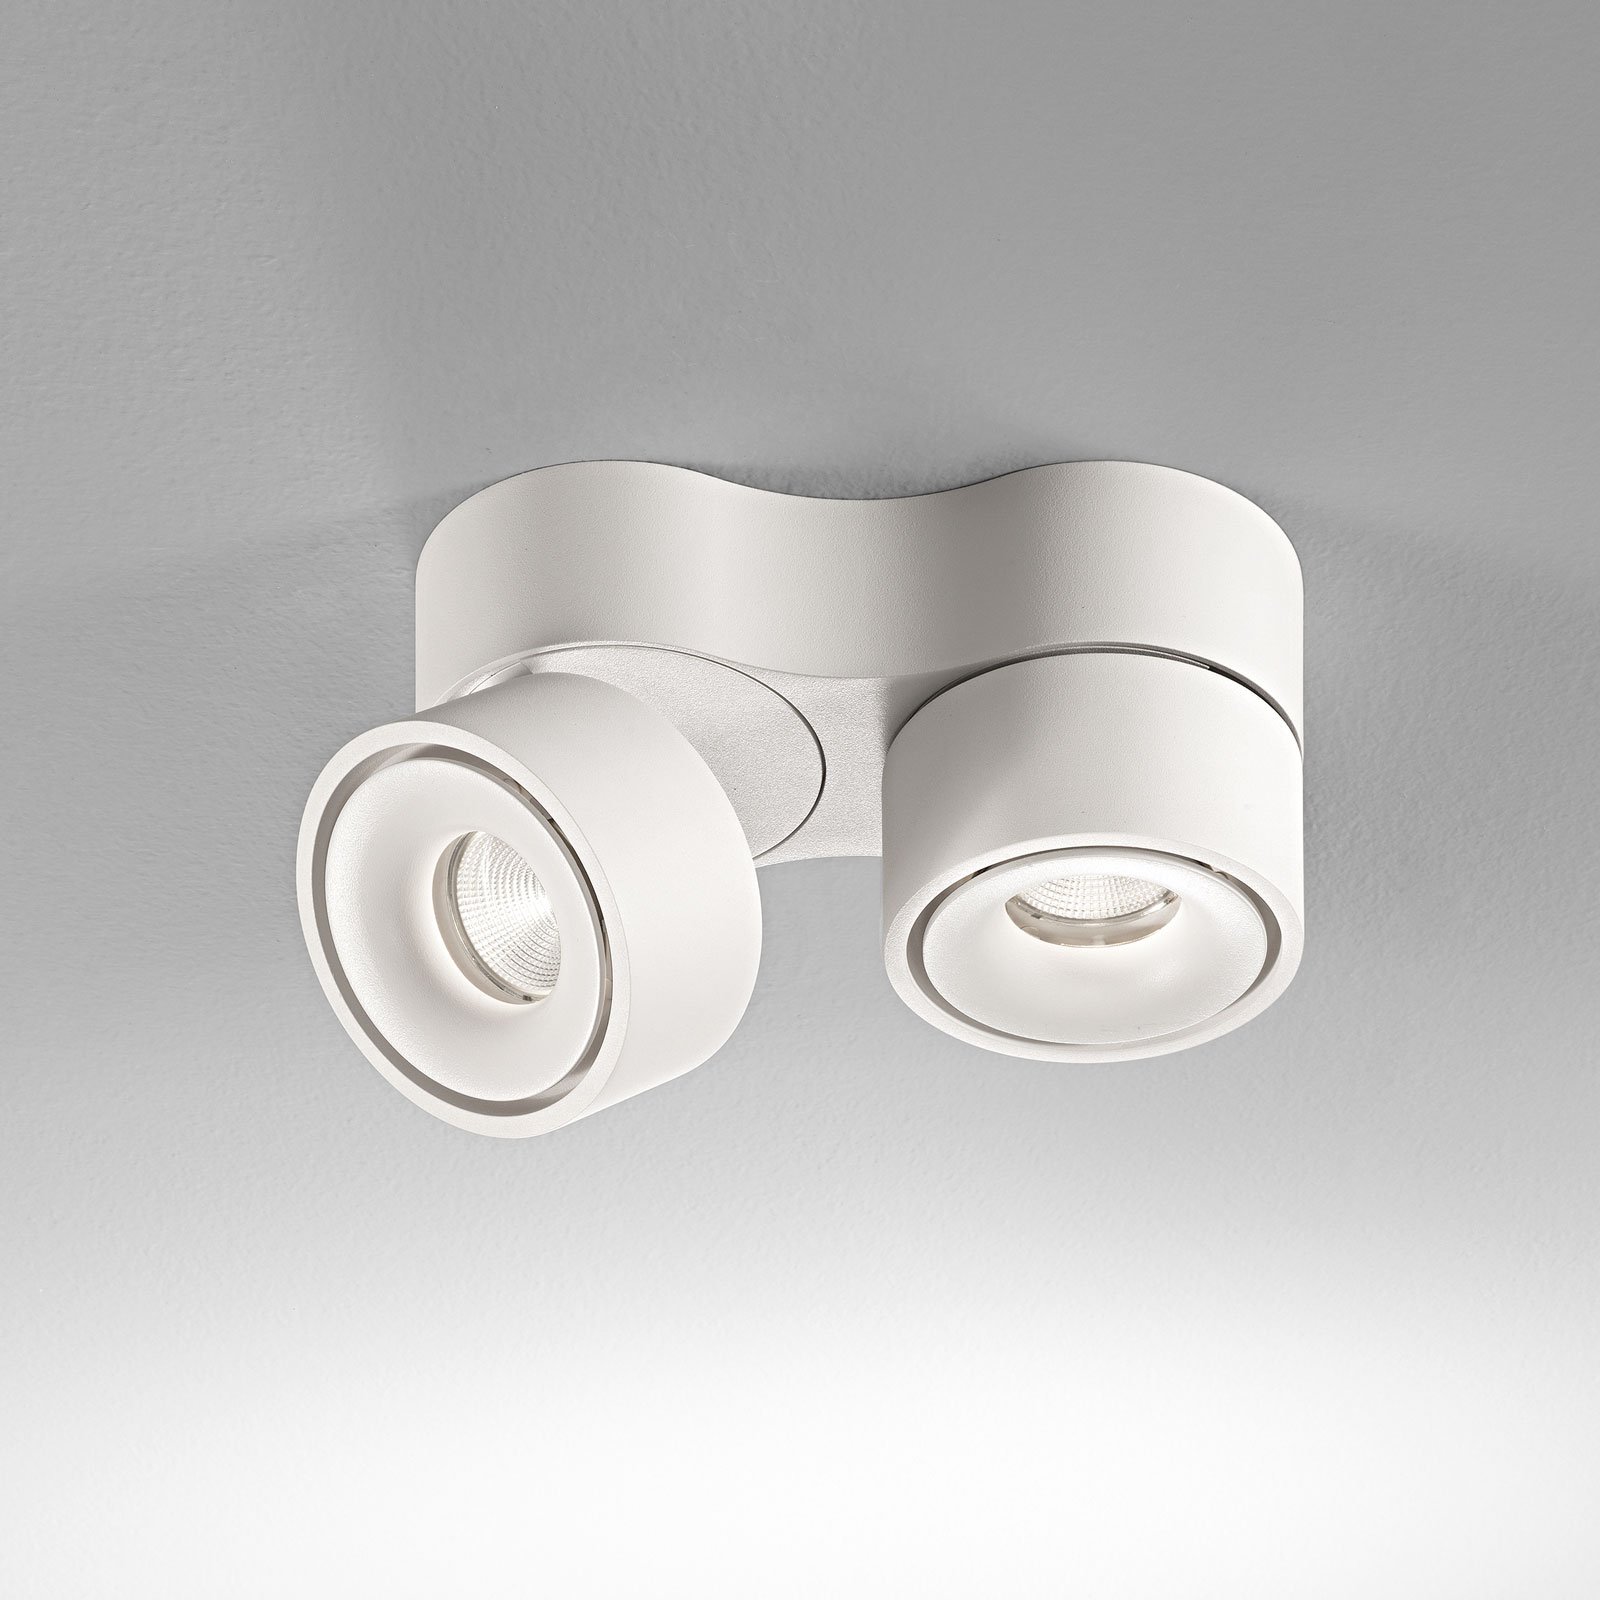 Egger Clippo Duo LED downlight, white, 2,700 K